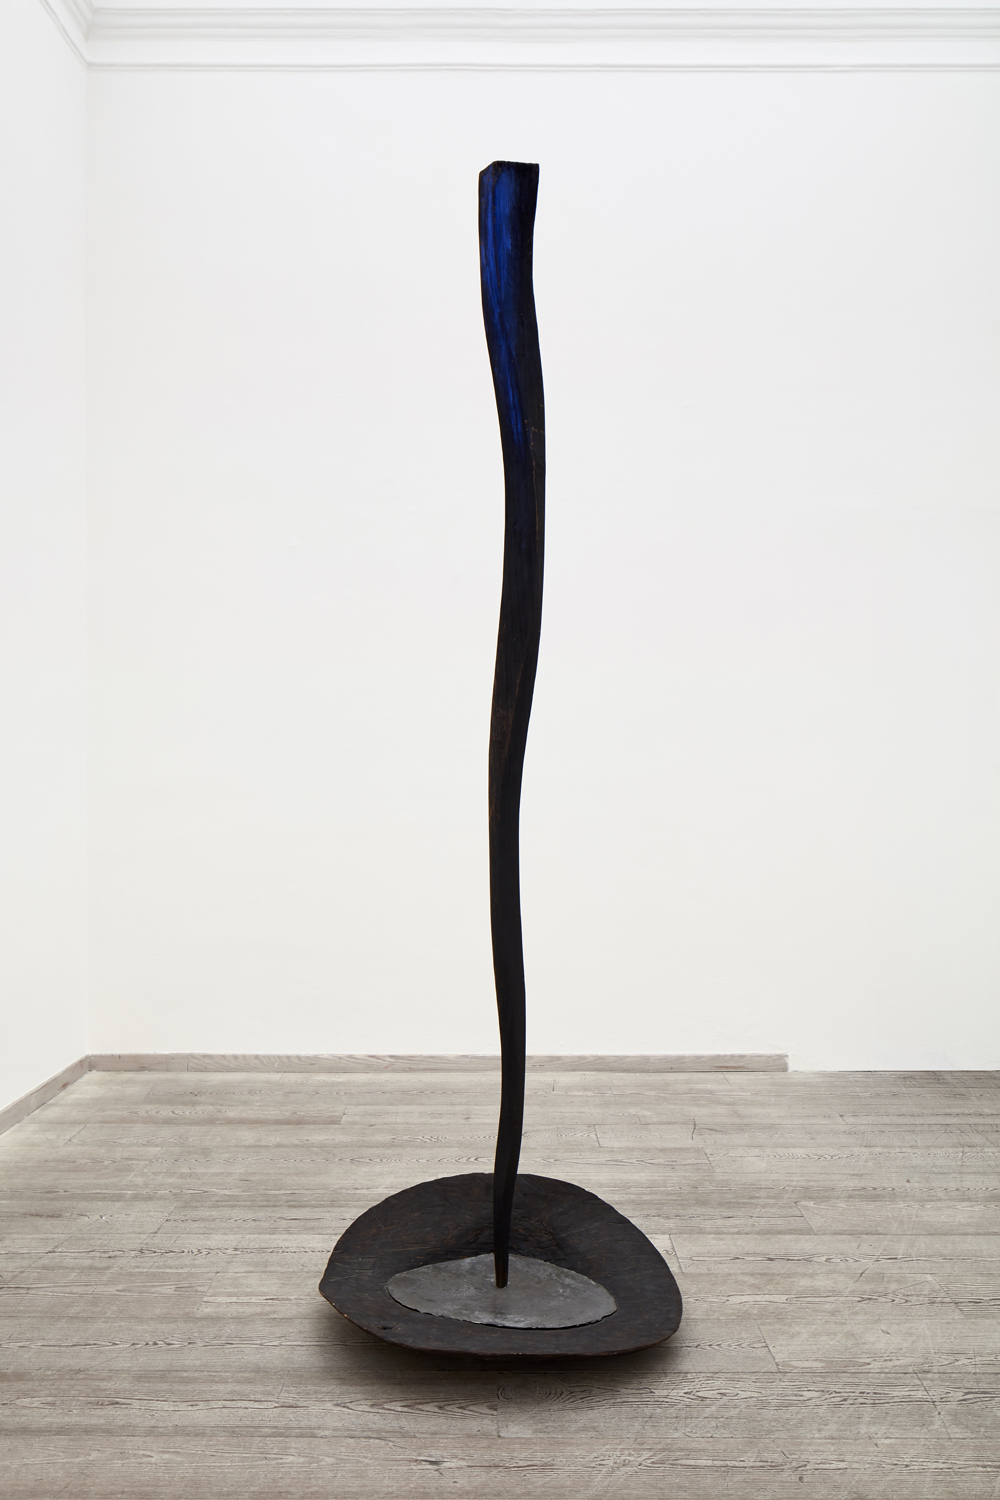 Nunzio, Senza titolo, 1986, piombo, legno combusto e pigmento blu al vertice, cm 225x80x60